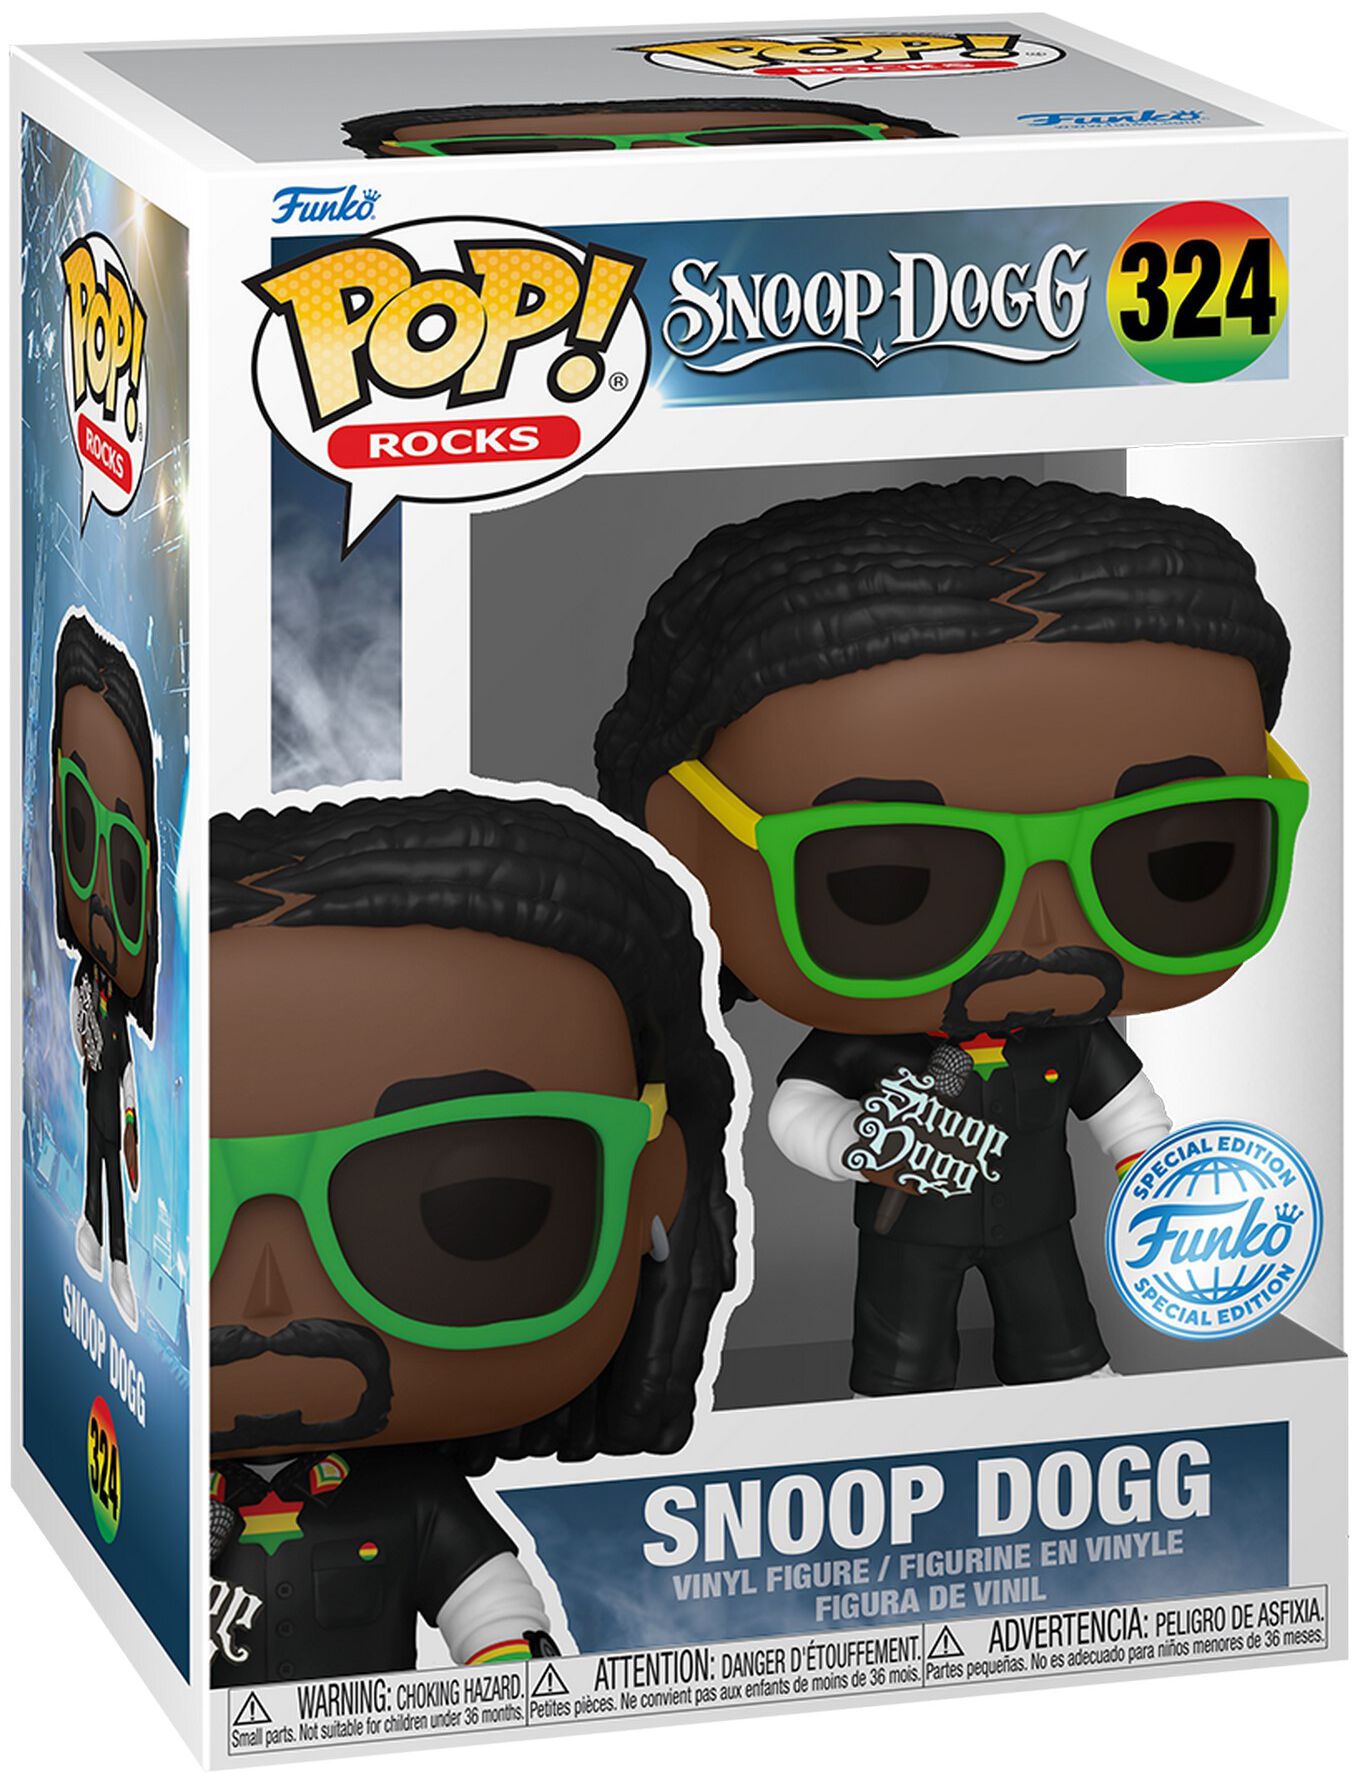 Snoop Dogg - Snoop Dogg Rocks! Vinyl Figur 324 - Funko Pop! Figur - Funko Shop Deutschland - Lizenziertes Merchandise!